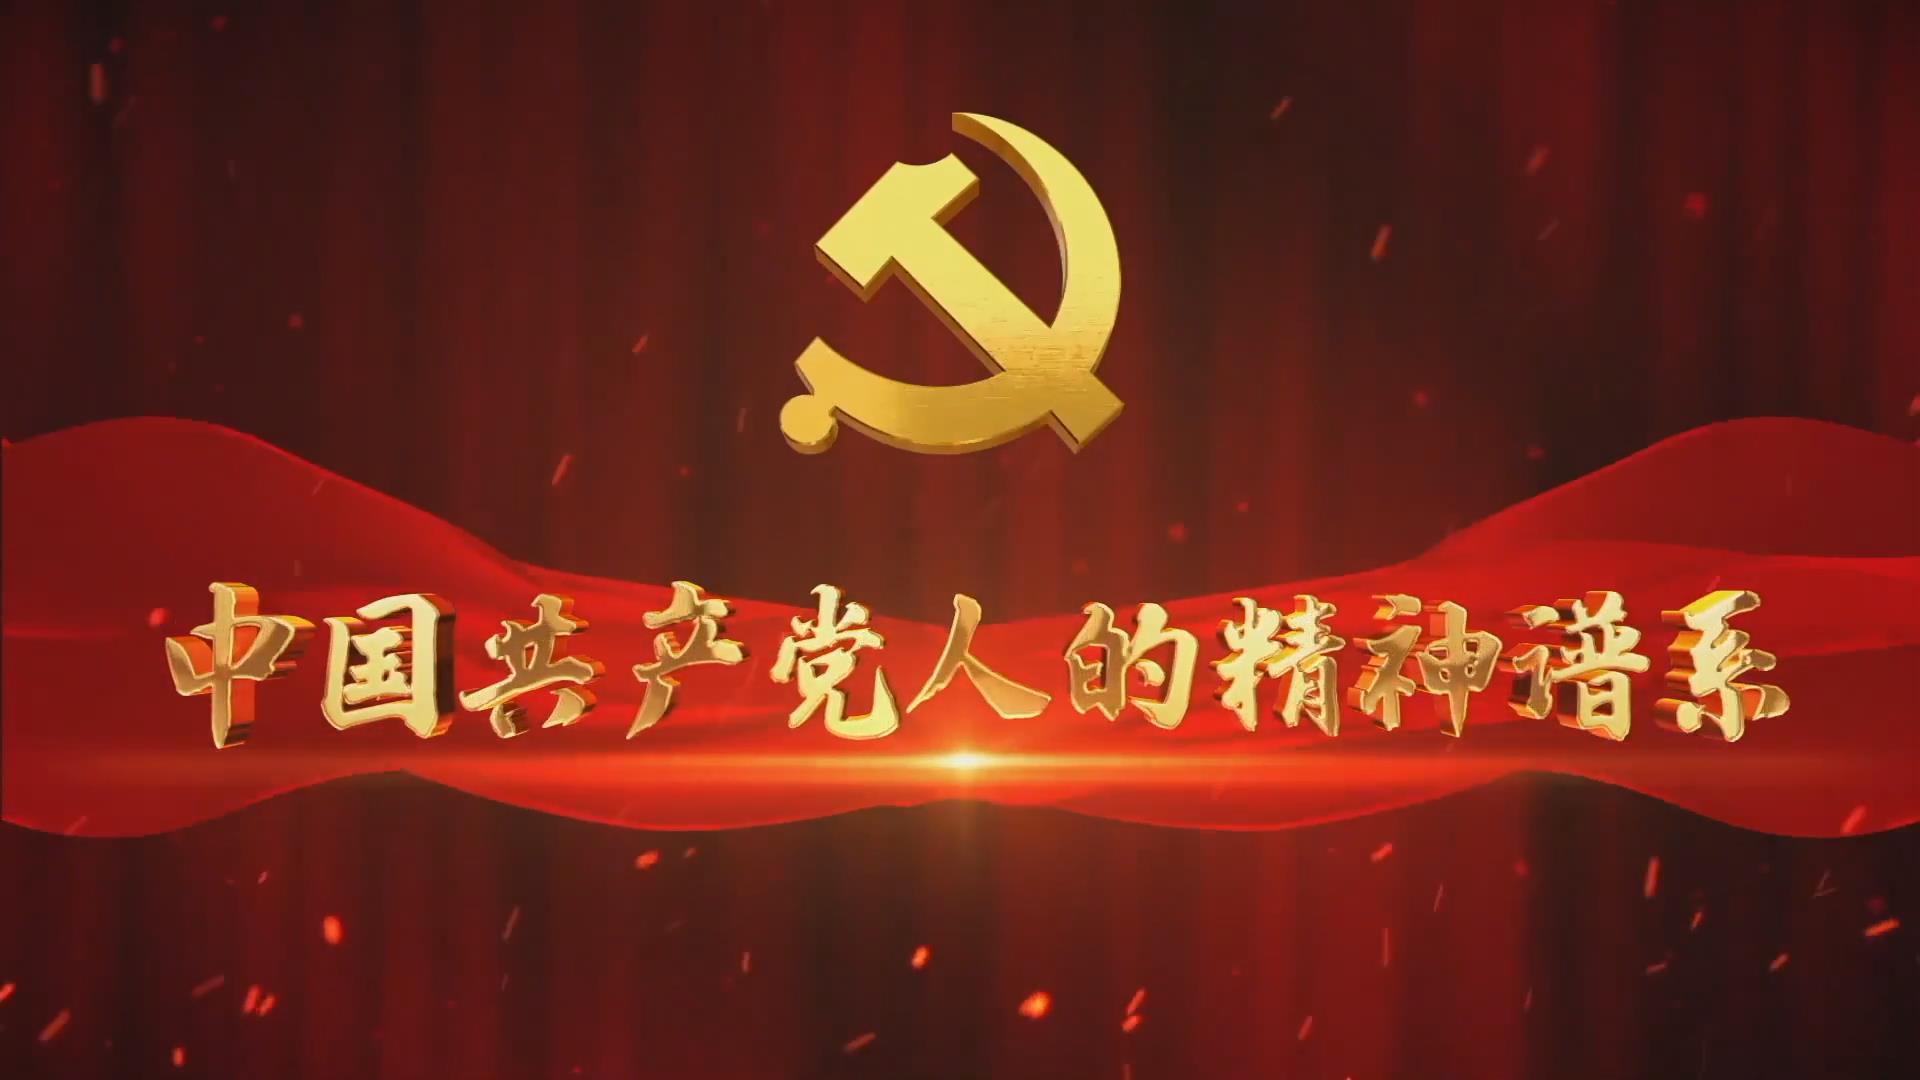 奋斗百年路 启航新征程·中国共产党人的精神谱系丨融入血脉的信仰,生